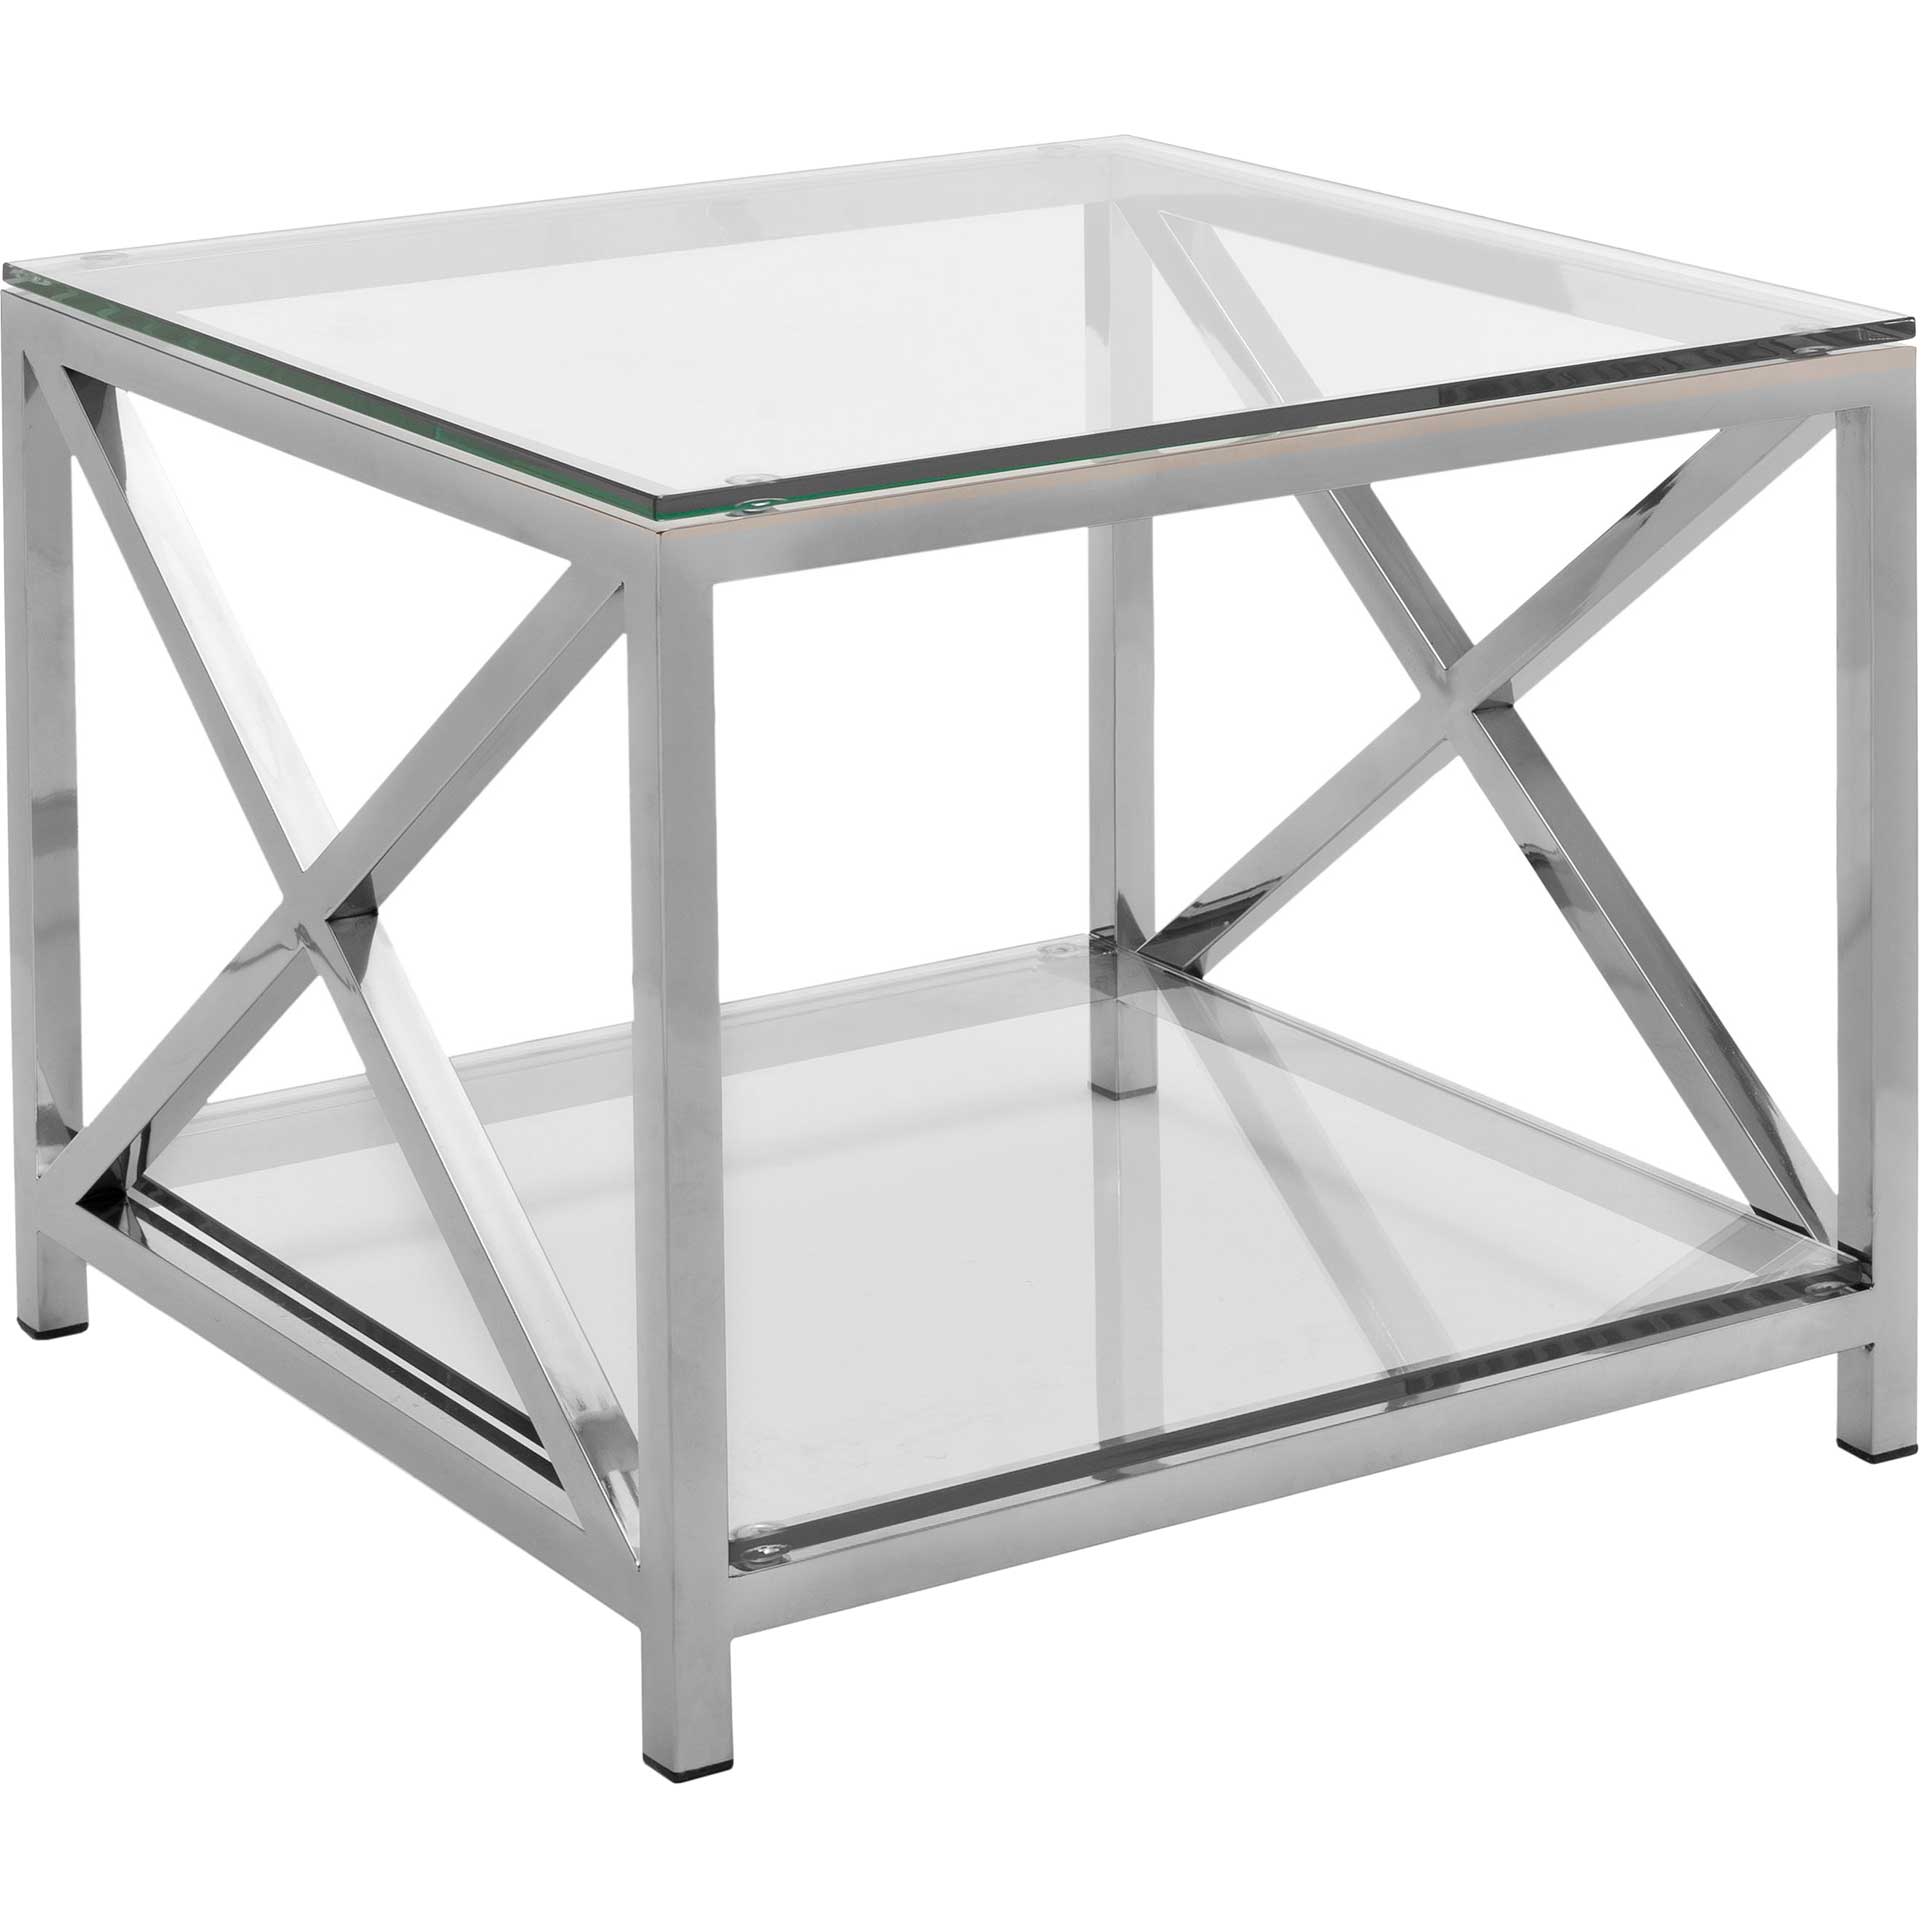 Hanna Chrome End Table With Glass Top Chrome